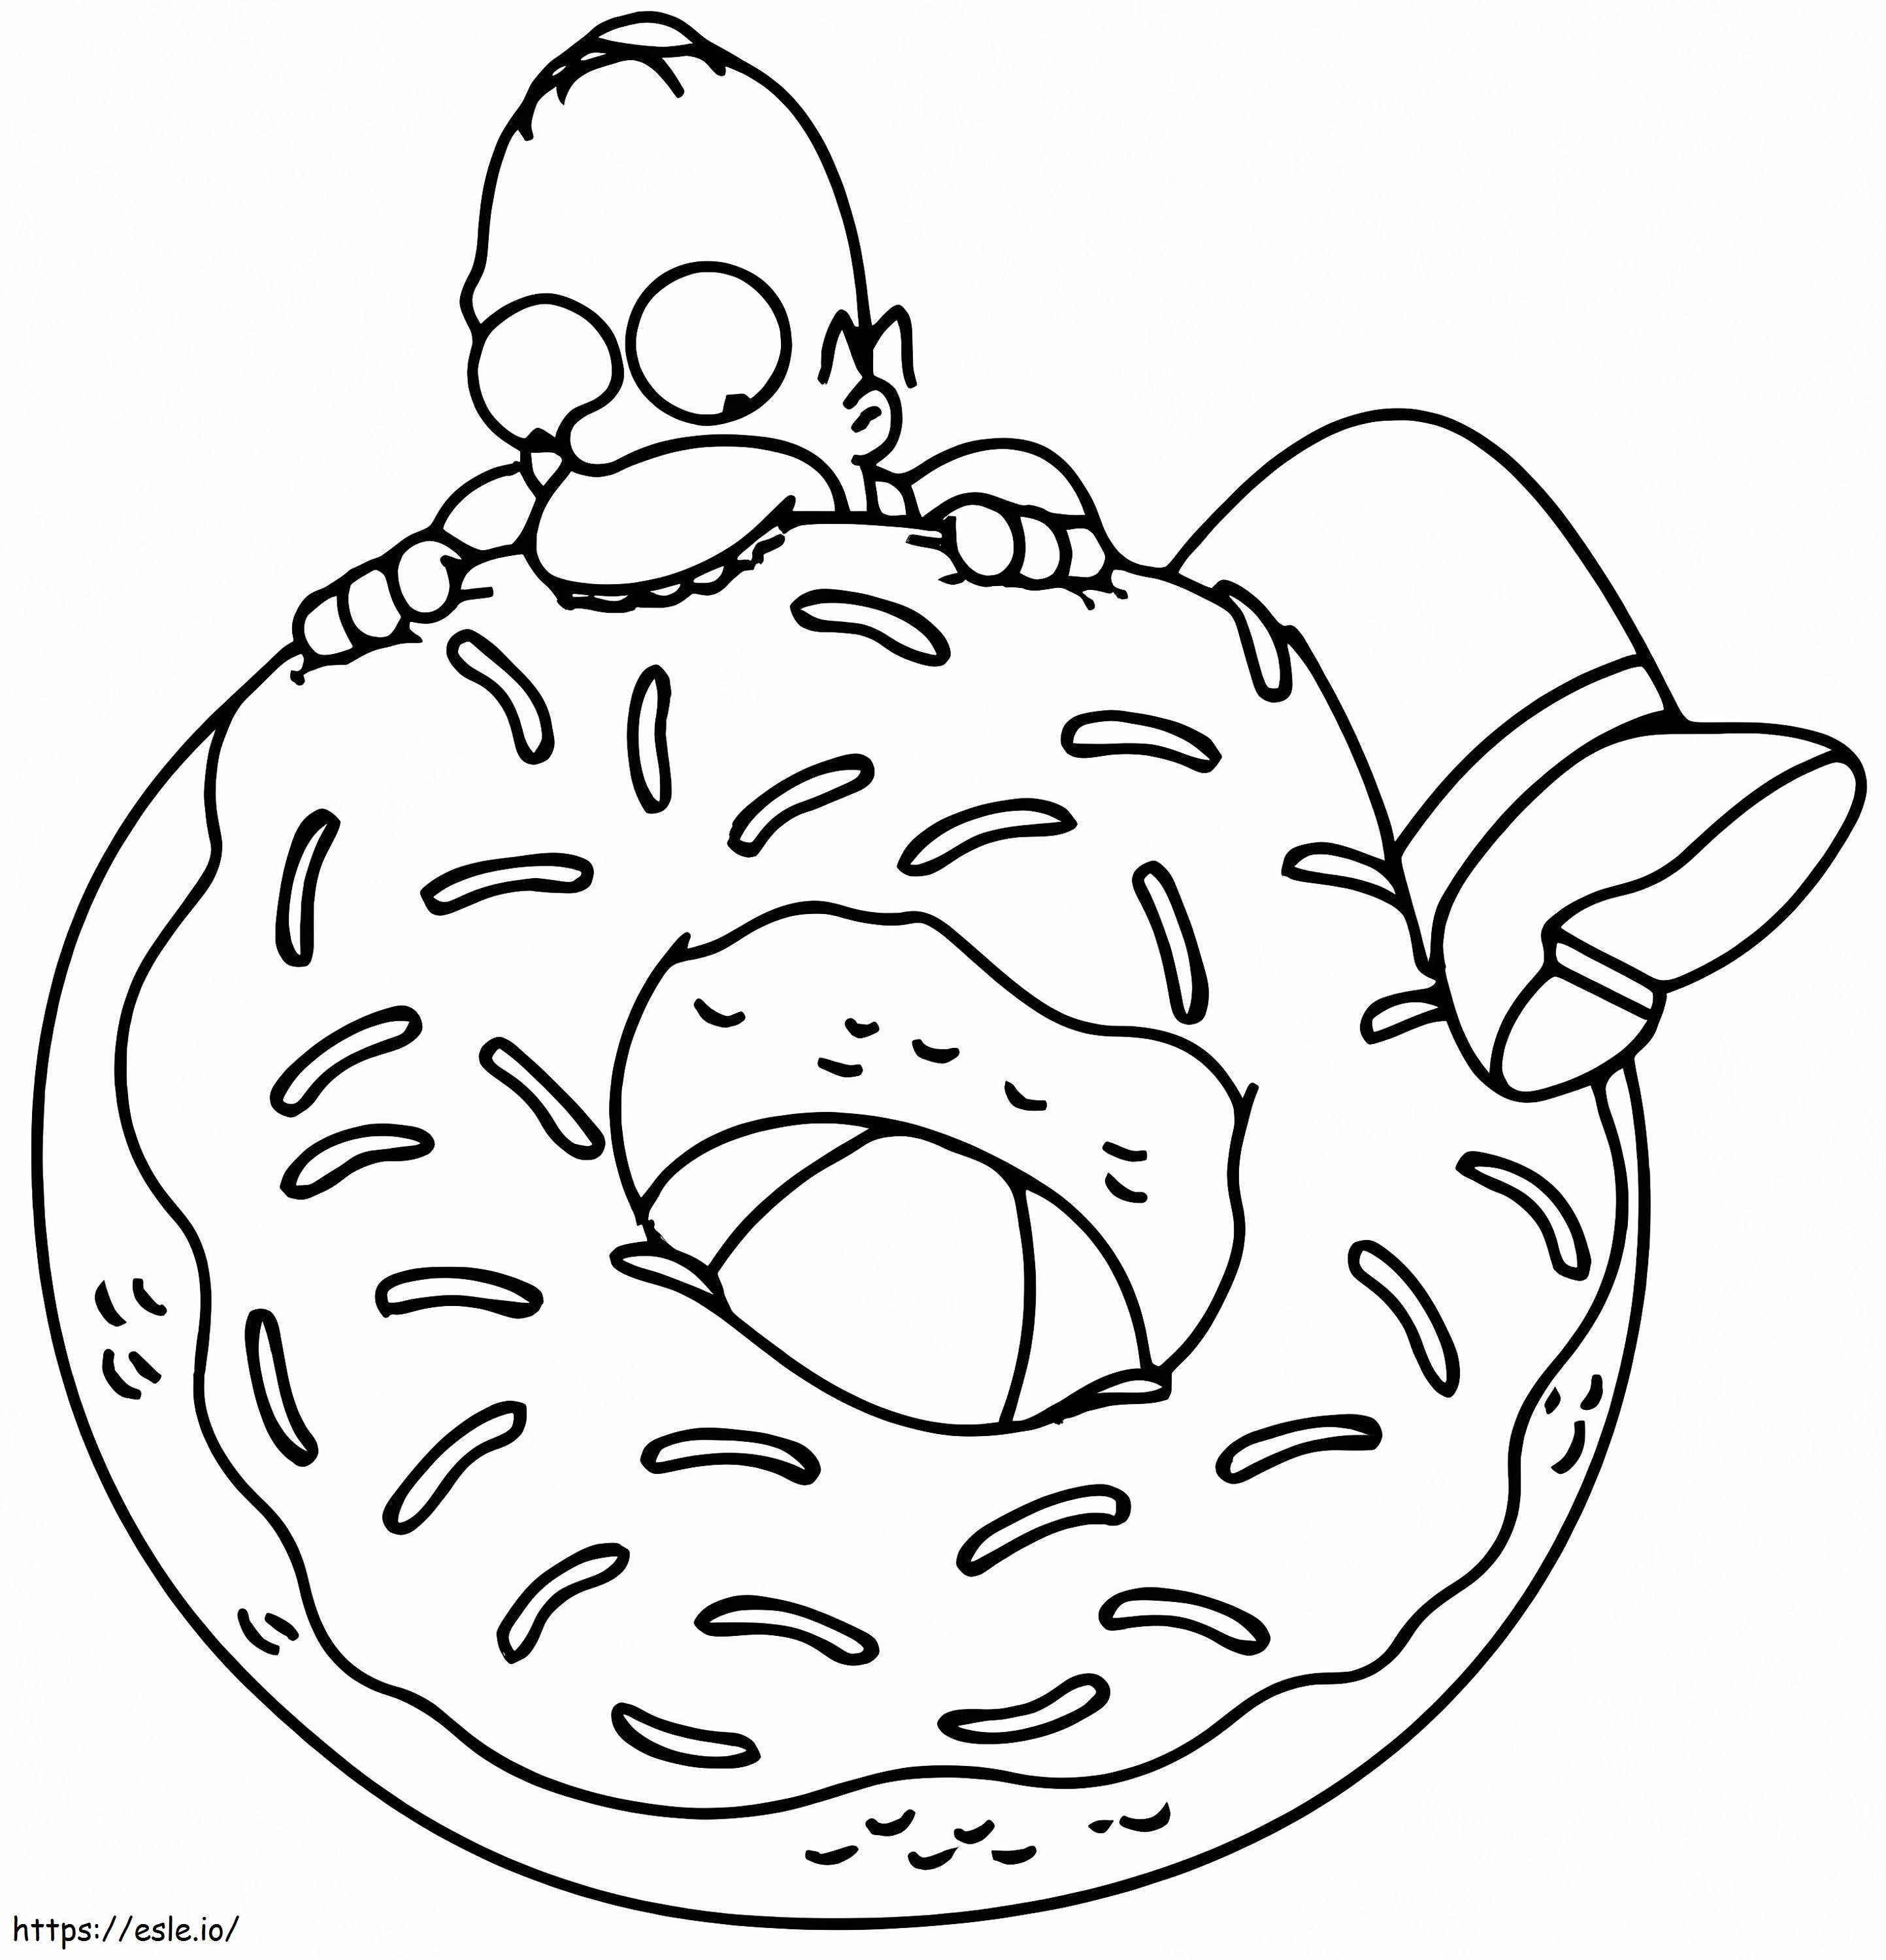 Homer Simpson jedzący pączka kolorowanka